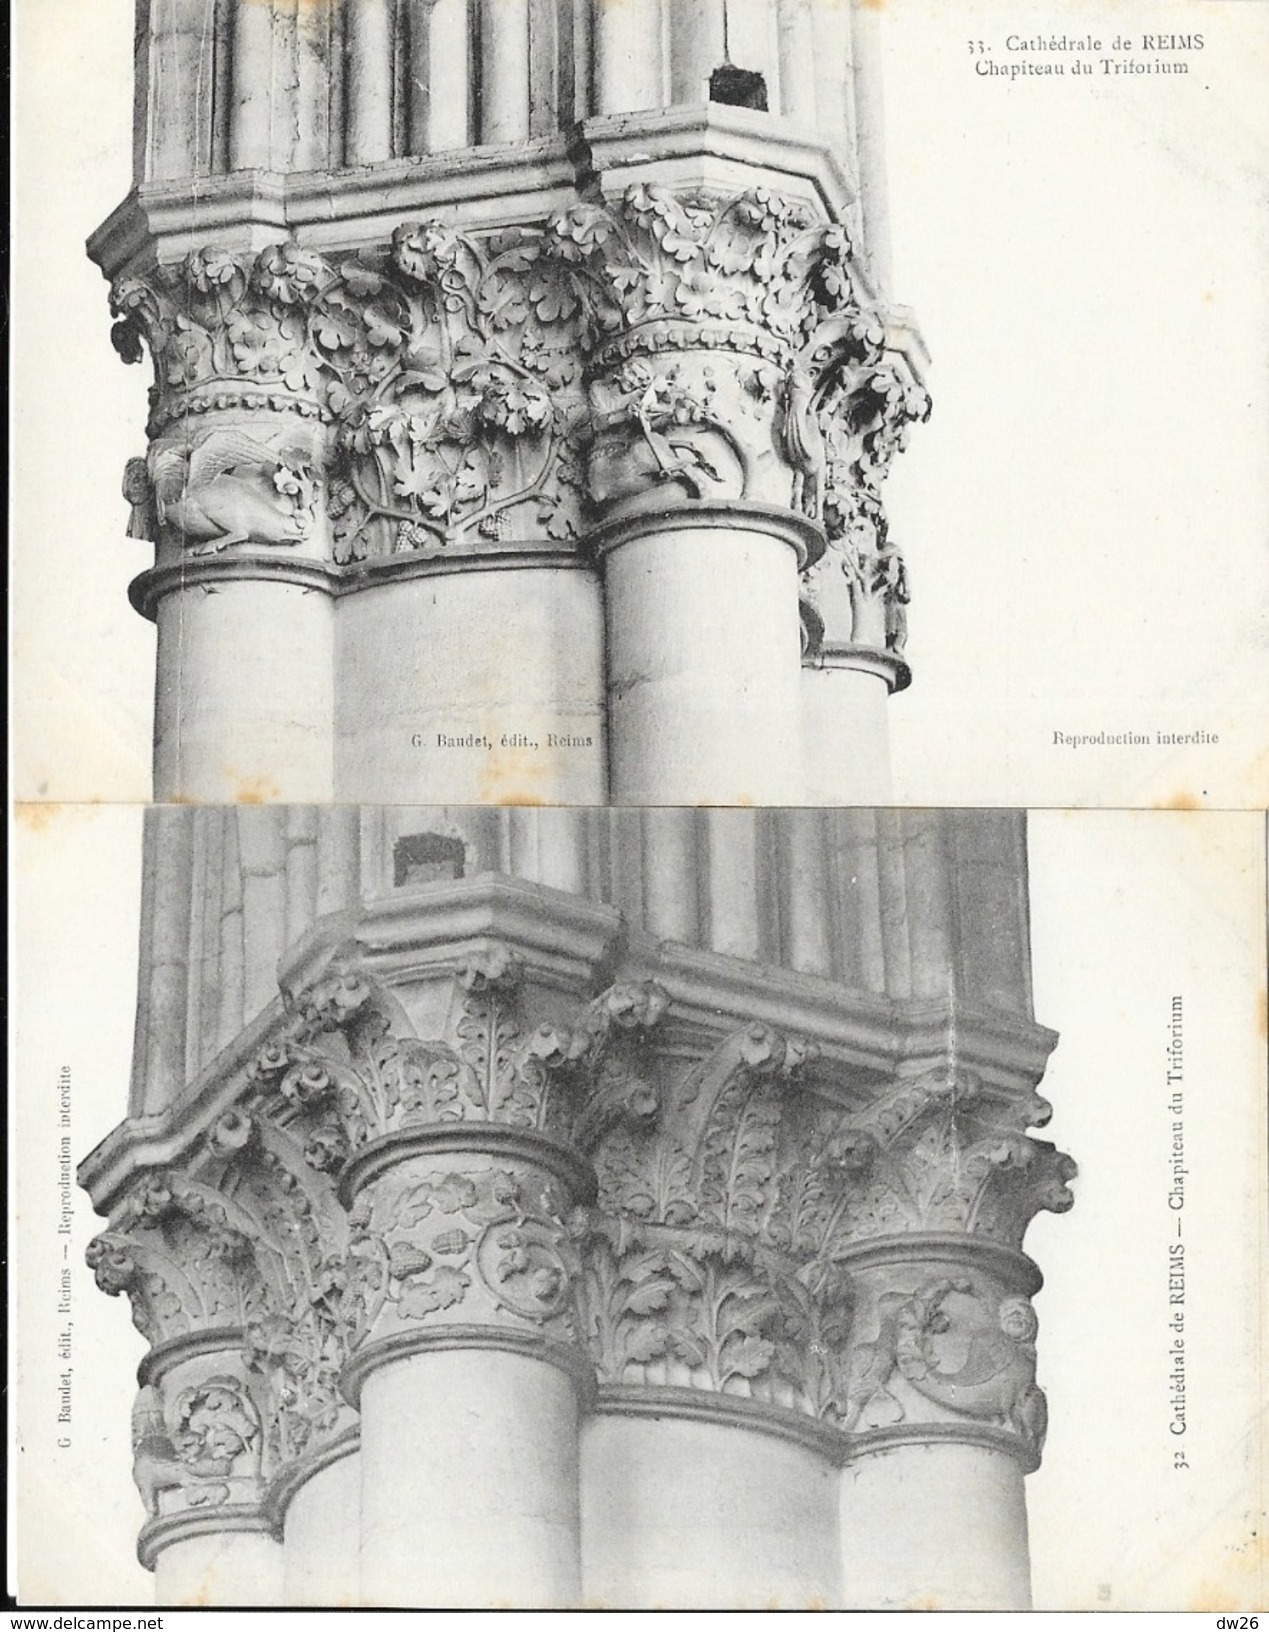 Cathédrale de Reims, vues intérieur et extérieur - Lot de 20 cartes non circulées (Nef, statues, Bas-relief, sculptures)